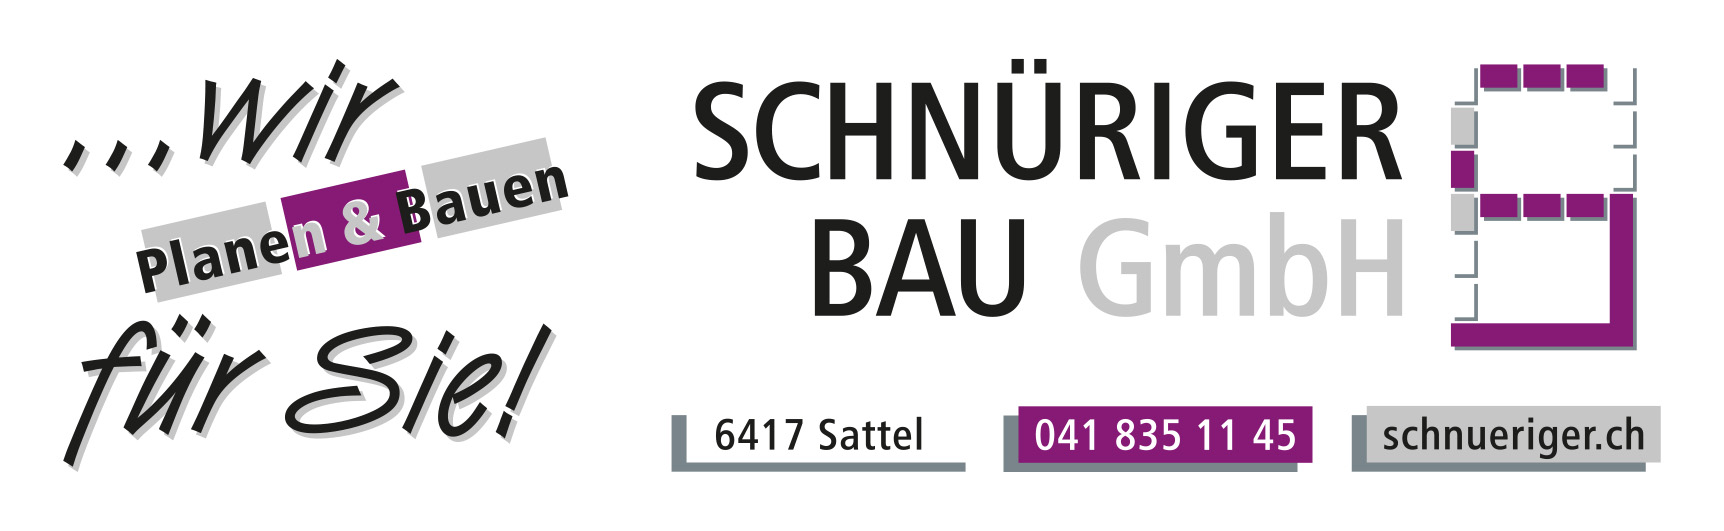 Schnüriger Bau GmbH